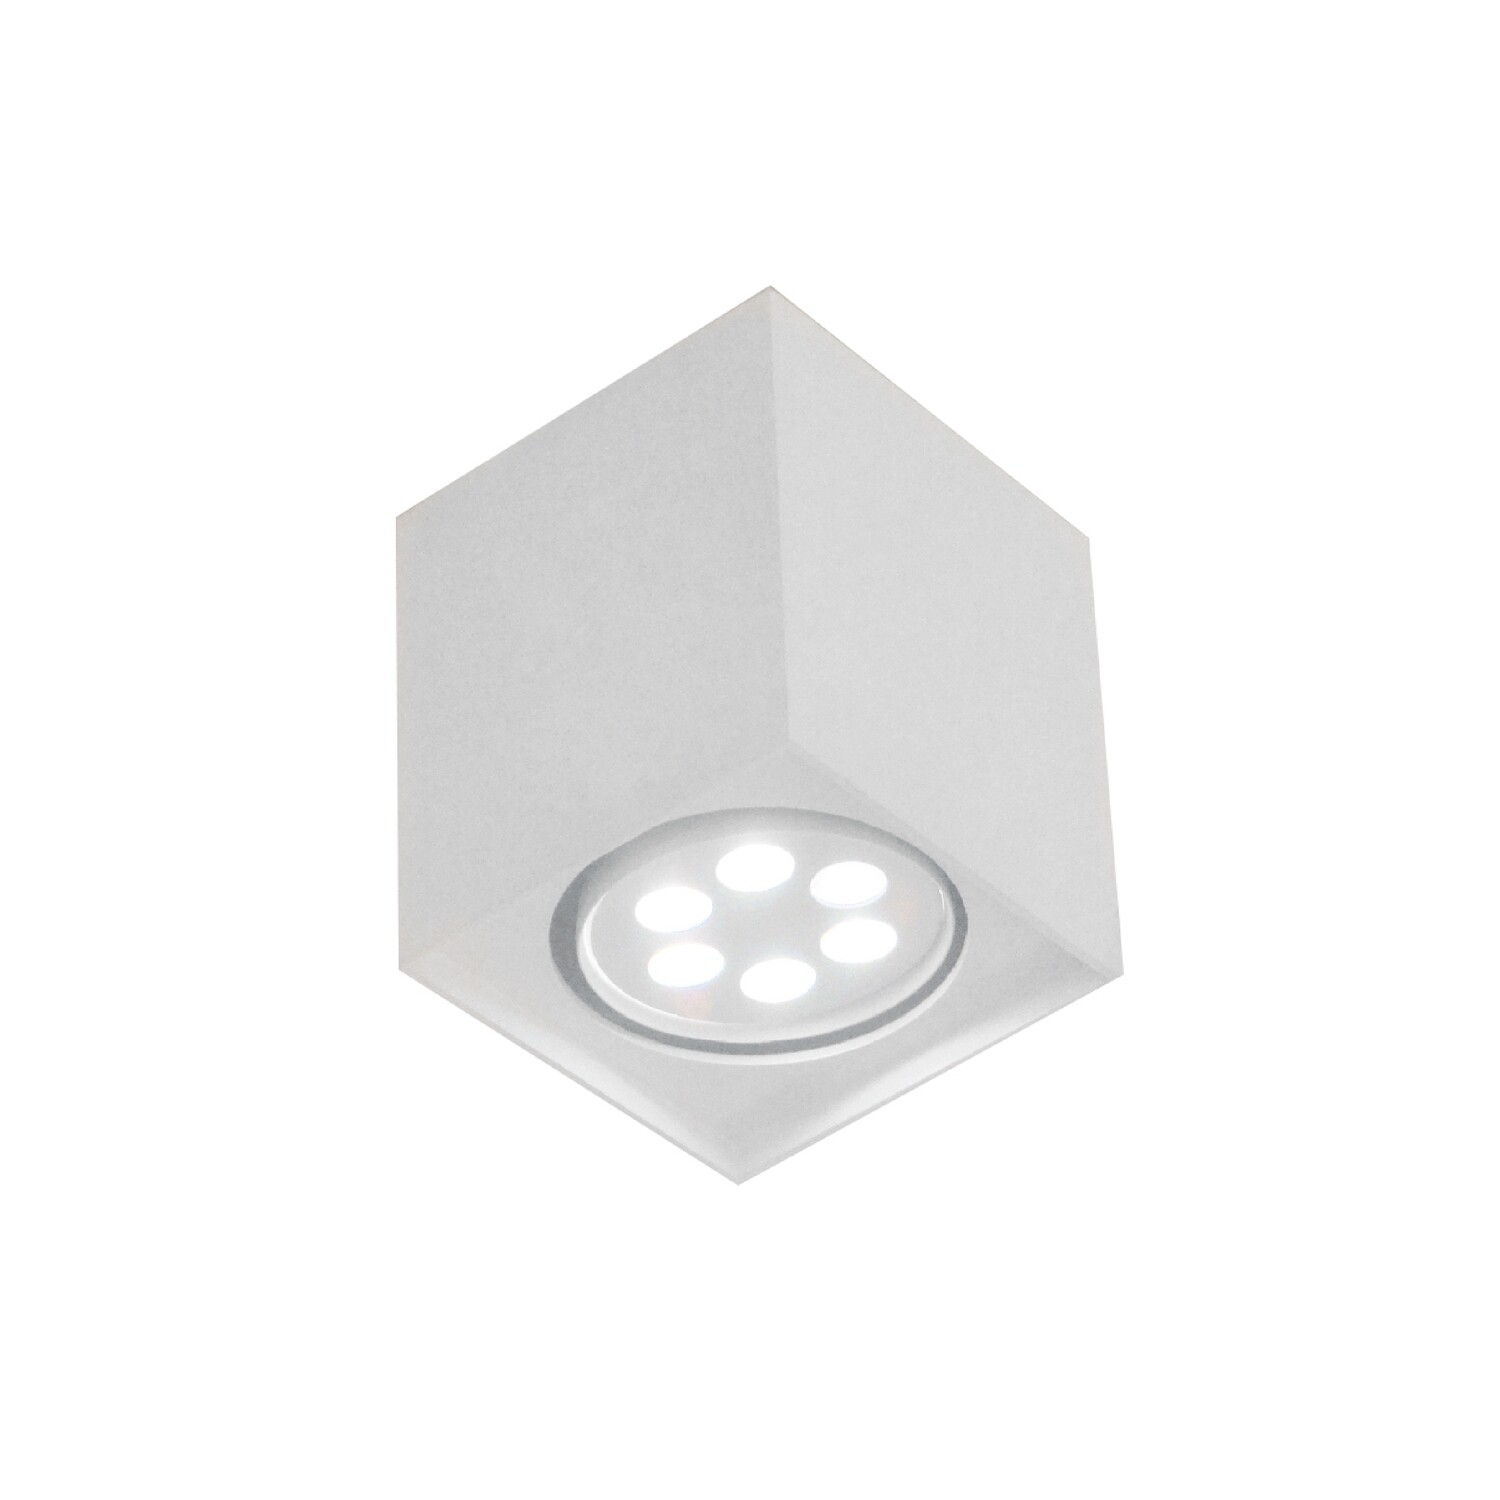 Lampara Deco cubo en color blanco alta luminosidad y luz cálida